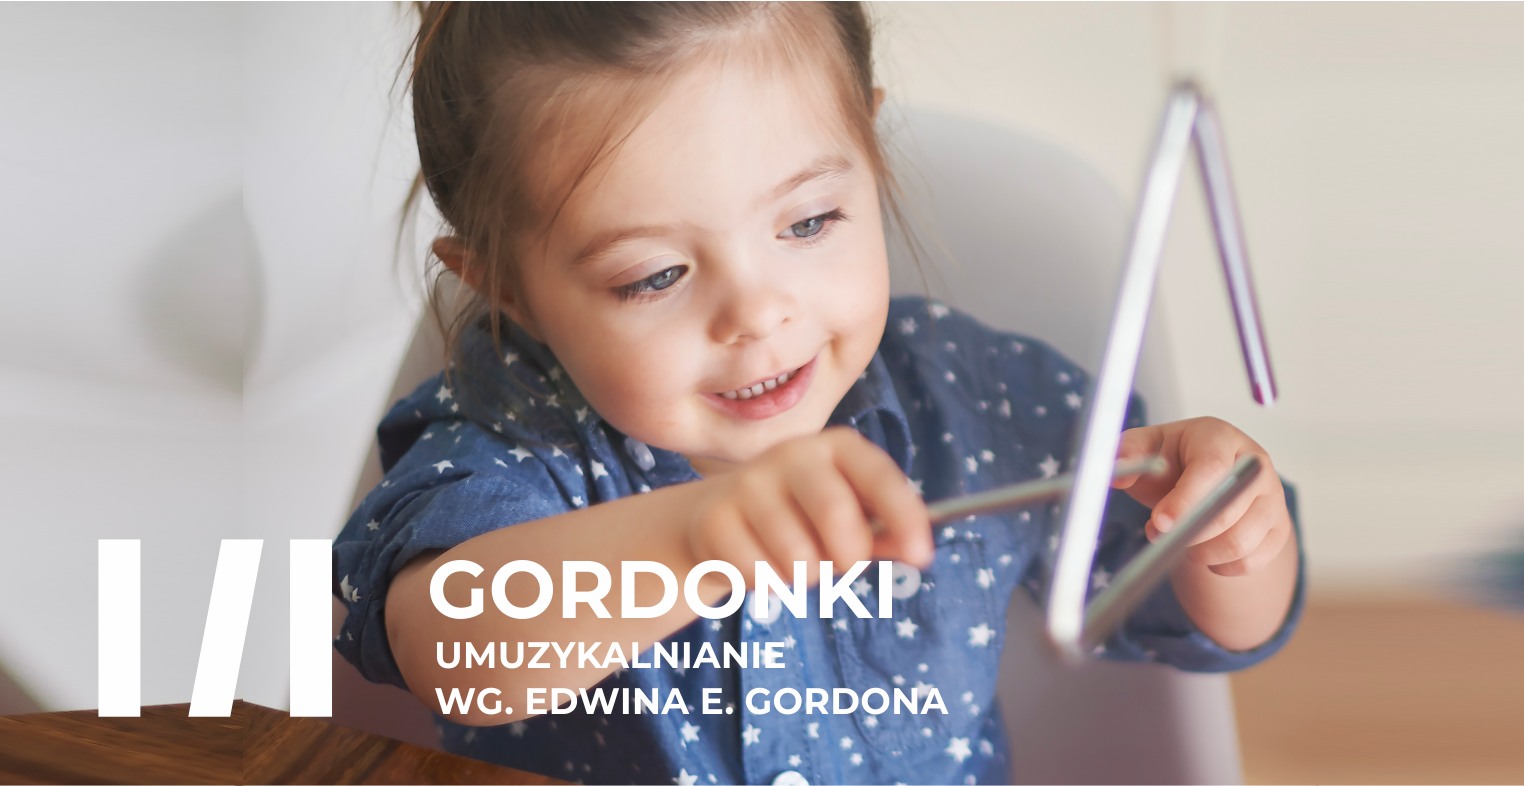 Gordonki – umuzykalnianie wg Edwina E. Gordona